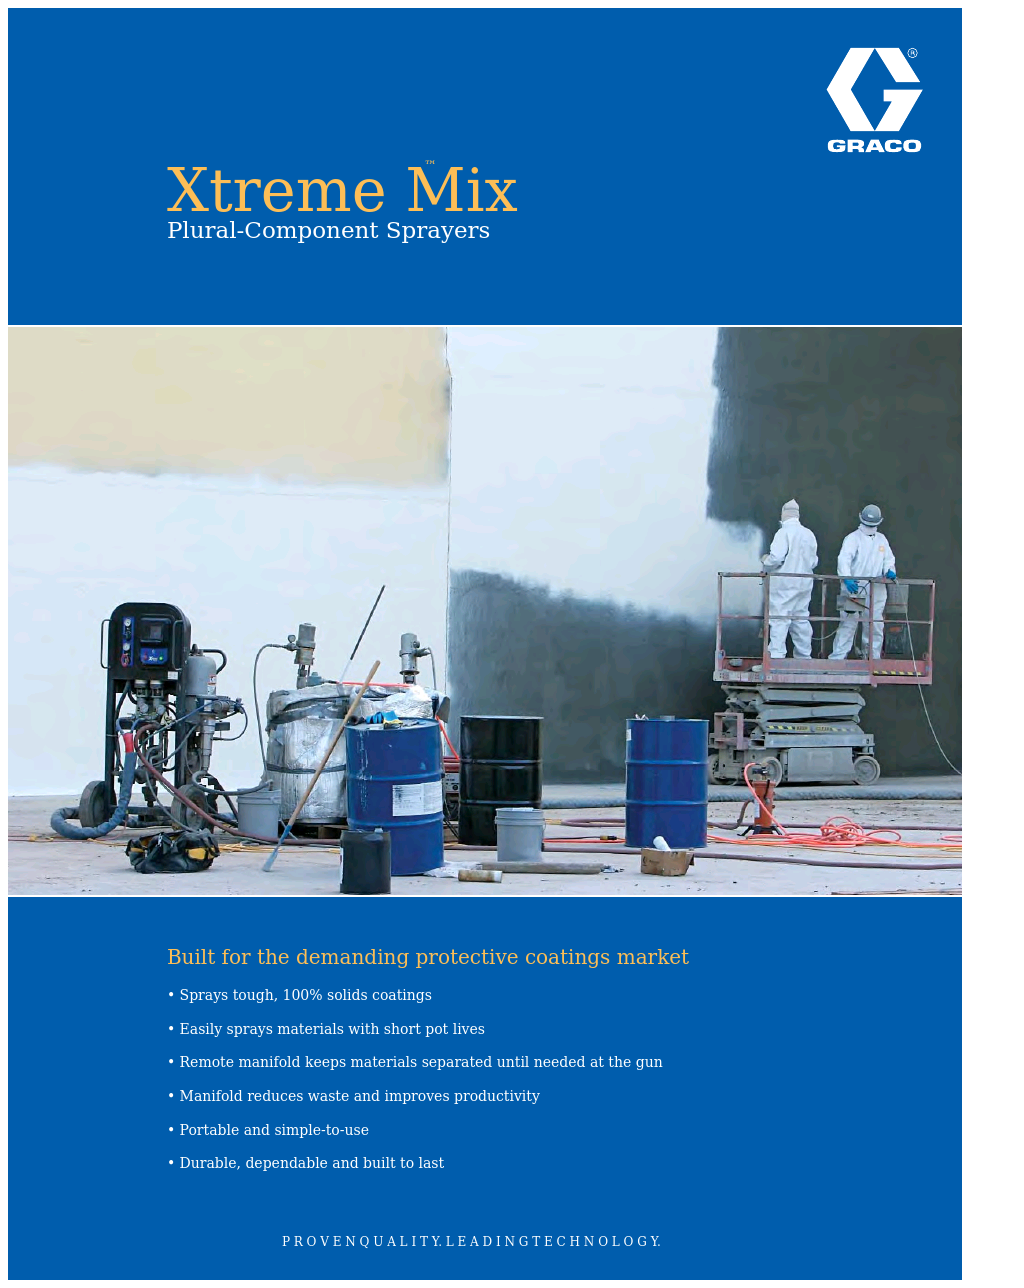 Xtreme Mix XTR705